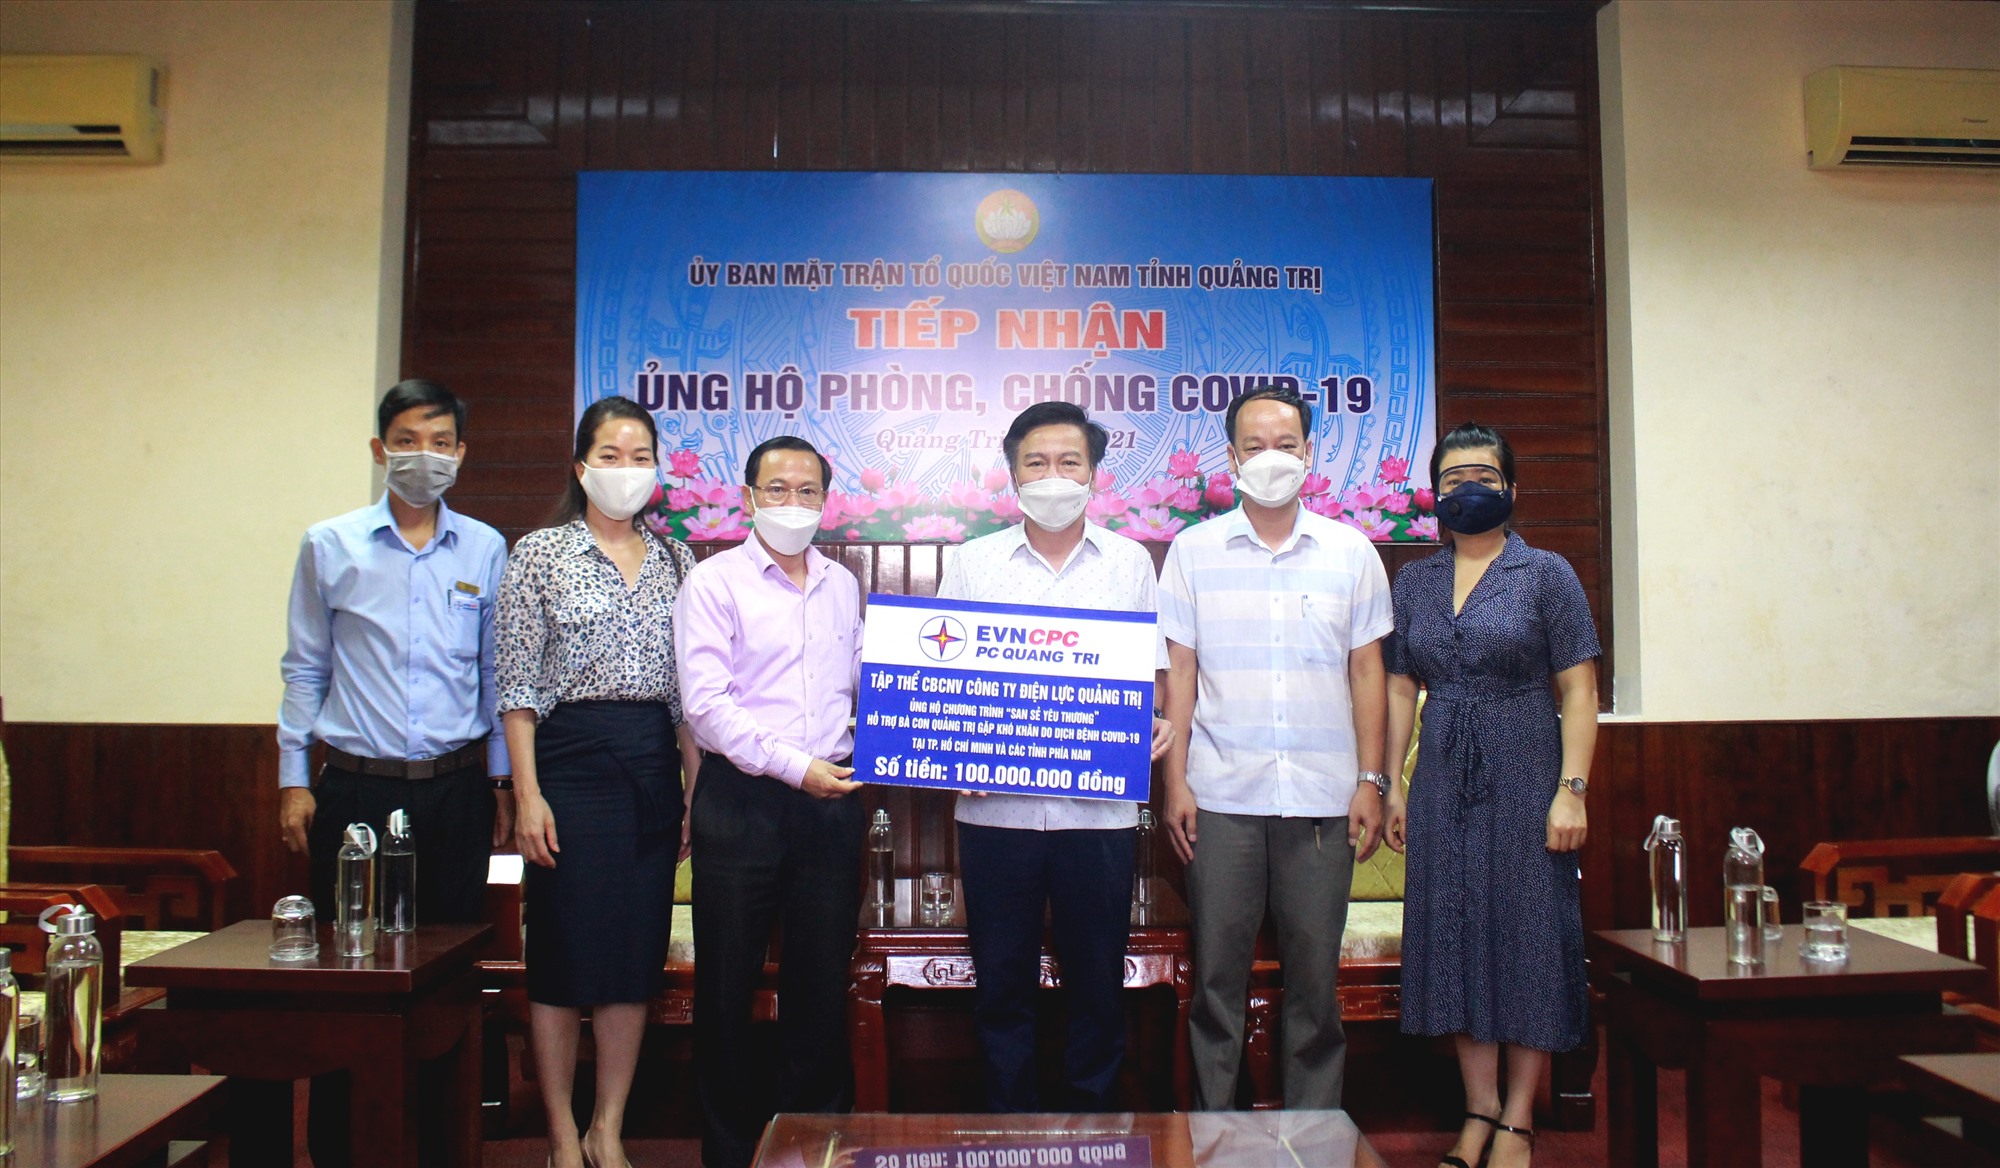 Công ty Điện lực Quảng Trị trao kinh phí hỗ trợ người dân Quảng Trị đang gặp khó khăn do COVID - 19 tại các tỉnh, thành phía Nam - Ảnh: T.L